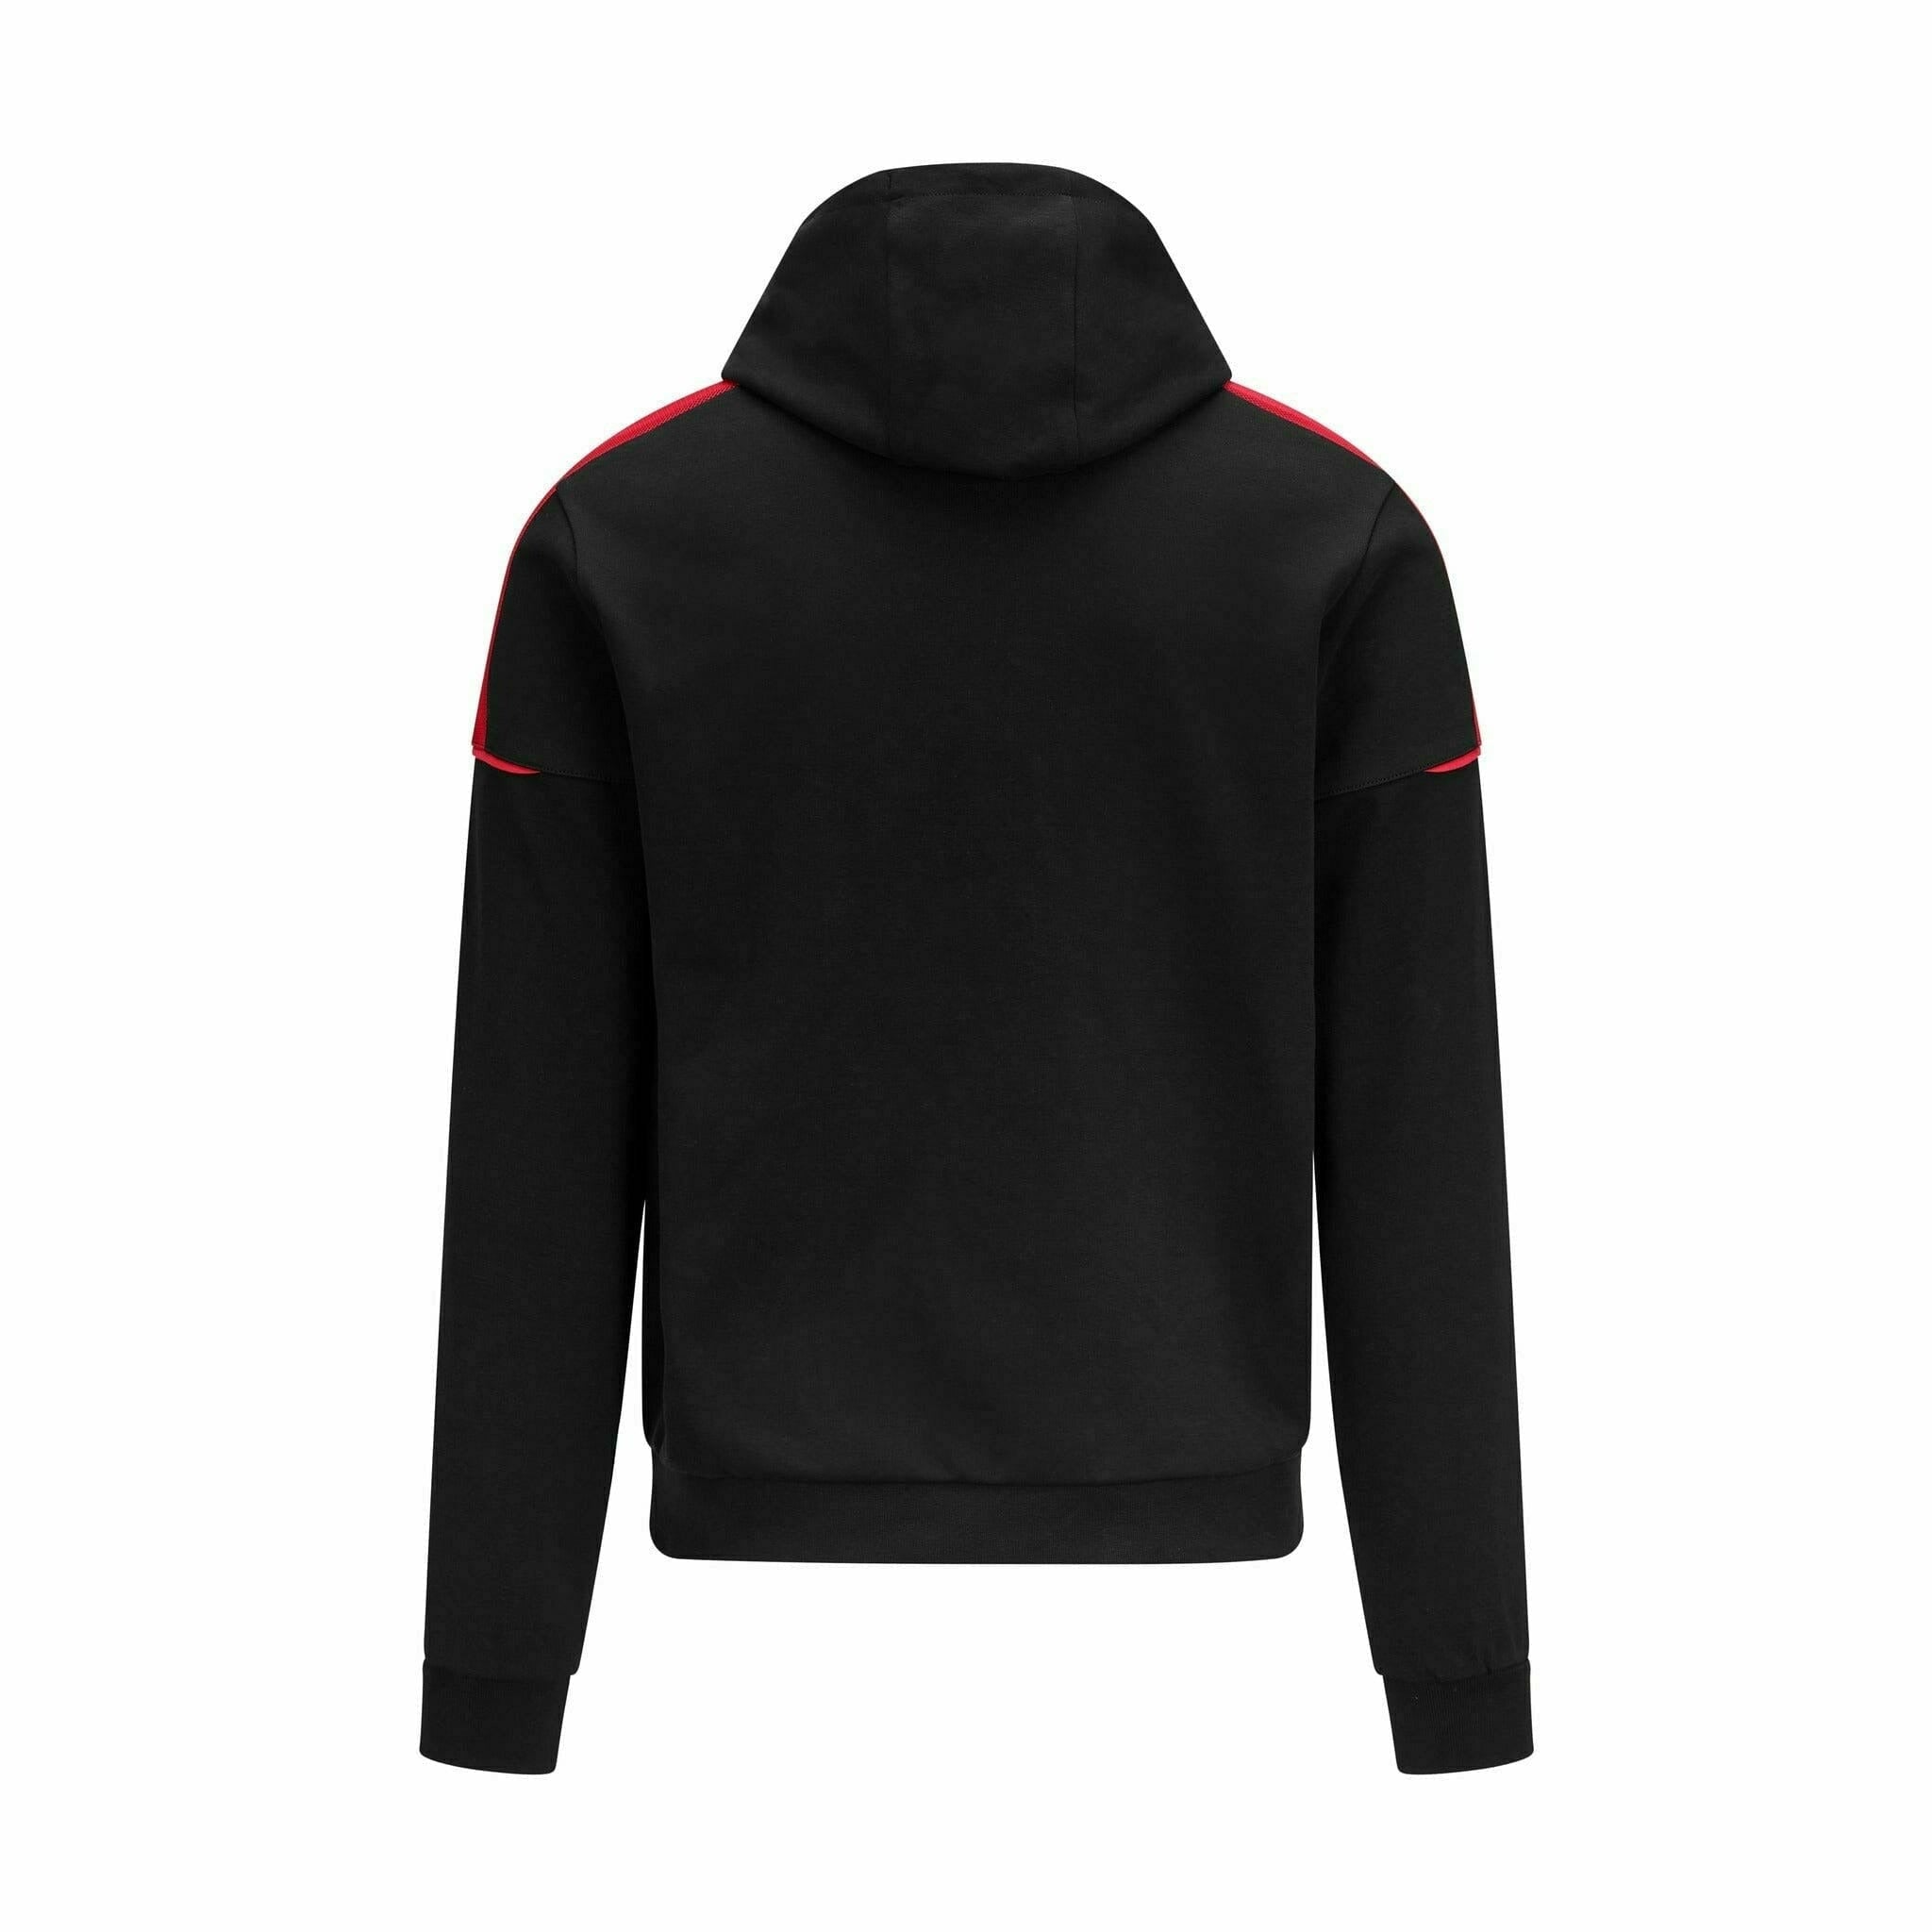 Porsche Motorsport Men's Hoodie Sweatshirt - Black